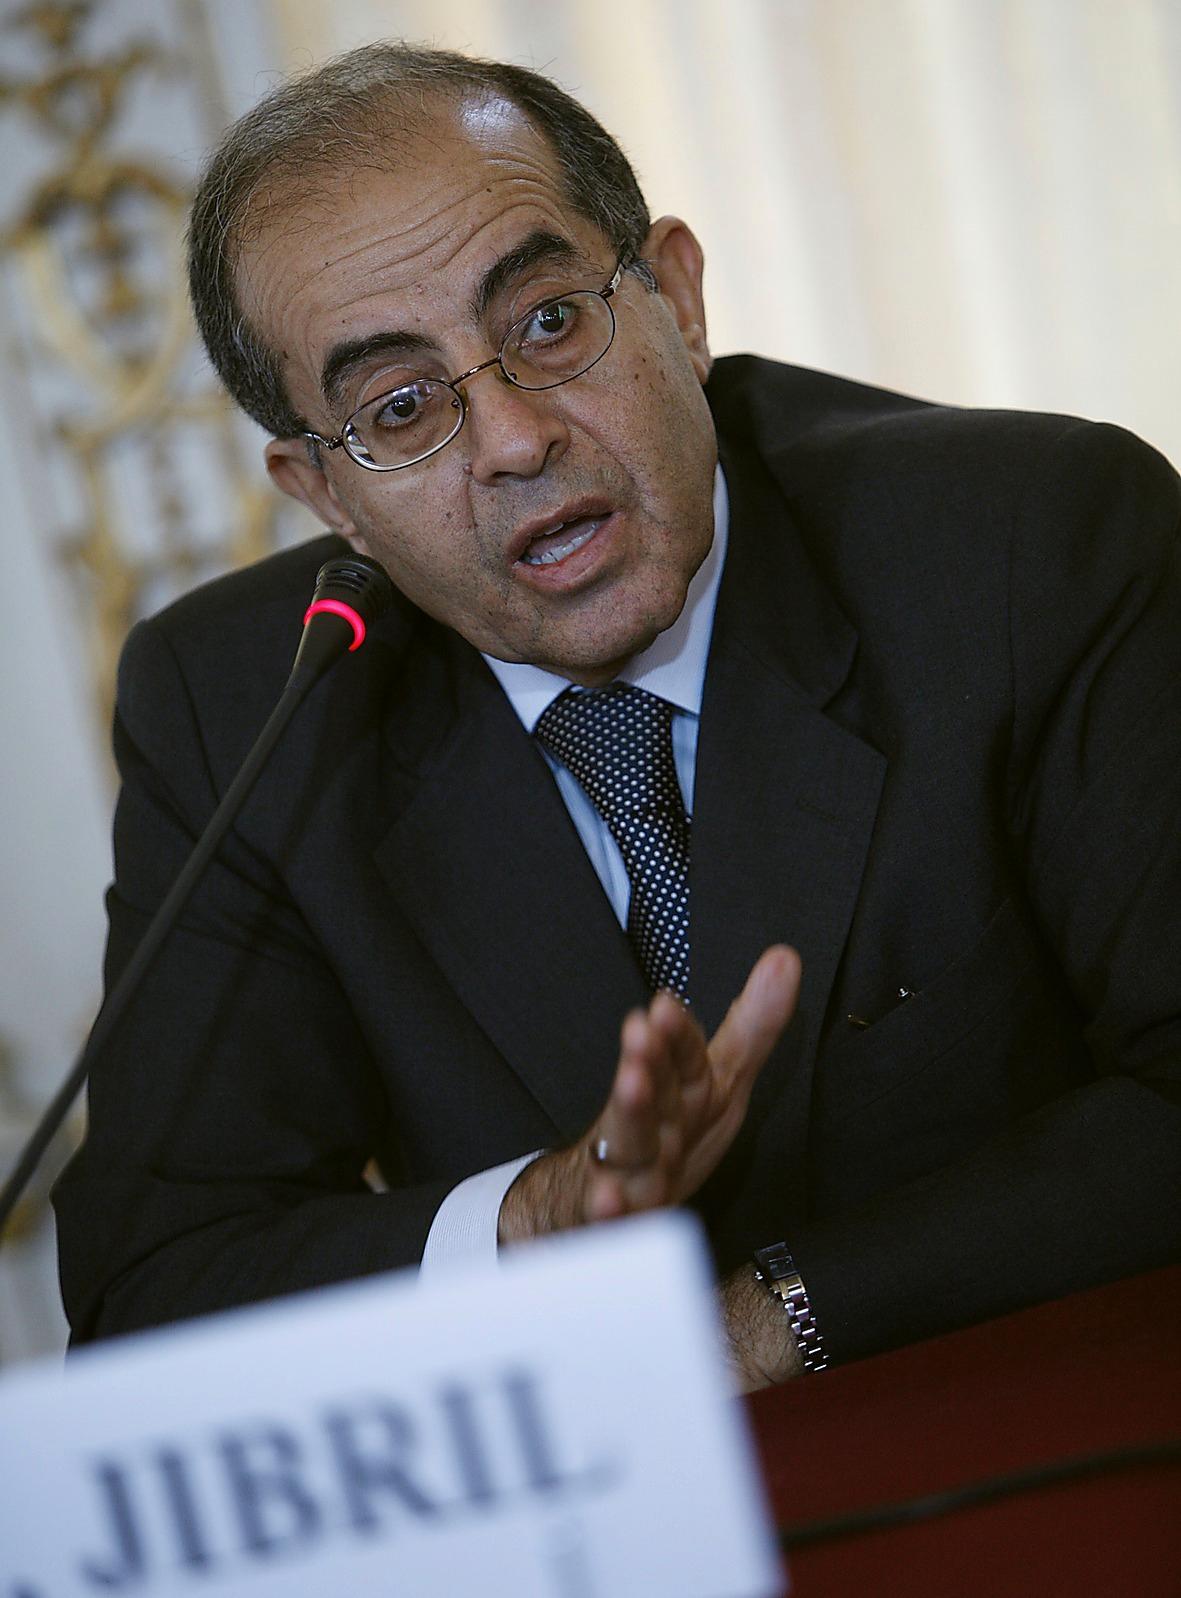 Mahmoud Jibril Statsvetare och politiker, delvis utbildad i USA. Tjänstgjorde 2007 till början av 2011 som chef för Gaddafiregimens Nationella utvecklingsråd. Nu ordförande för TNC:s ministerråd som ska till-
sätta en ny regering.